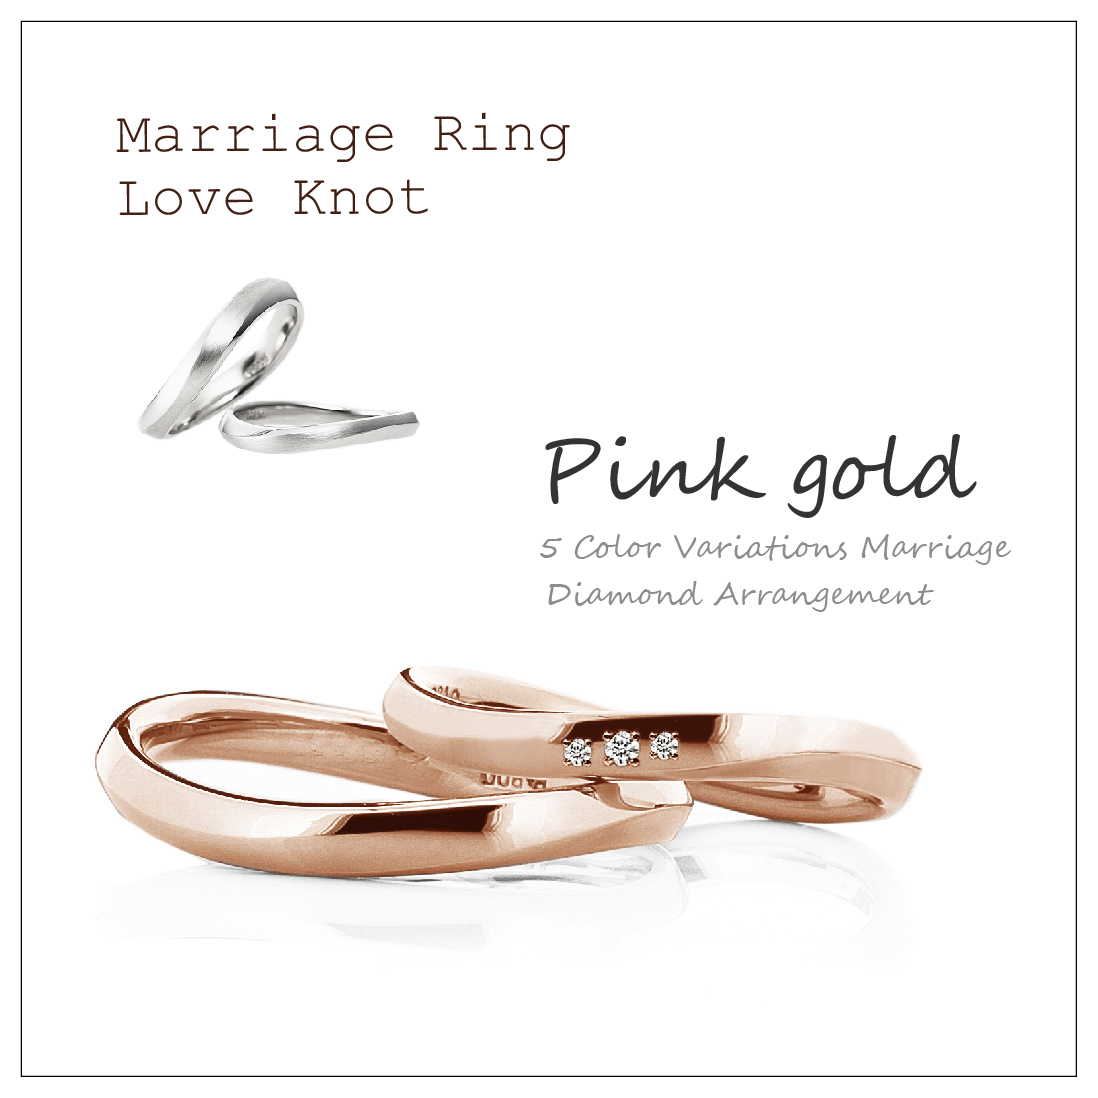 ウエーブのペアの結婚指輪です。2本ともピンクゴールドで、レディースは真ん中に3ピースのダイヤモンドを留めています。